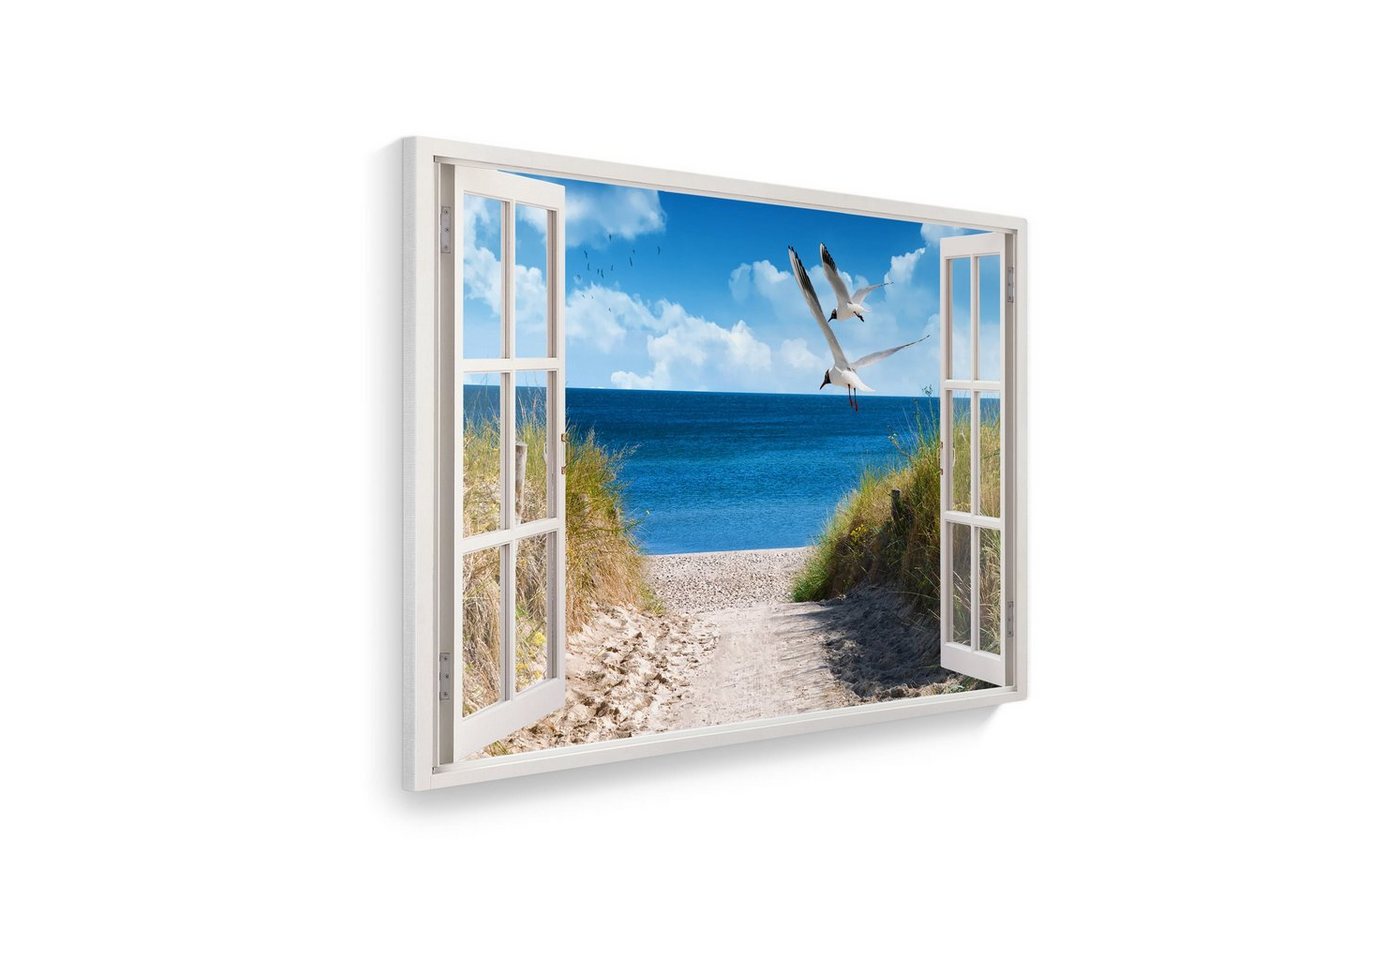 WallSpirit Leinwandbild Fenster mit Aussicht", Strand mit Möwen, Leinwandbild geeignet für alle Wohnbereiche" von WallSpirit